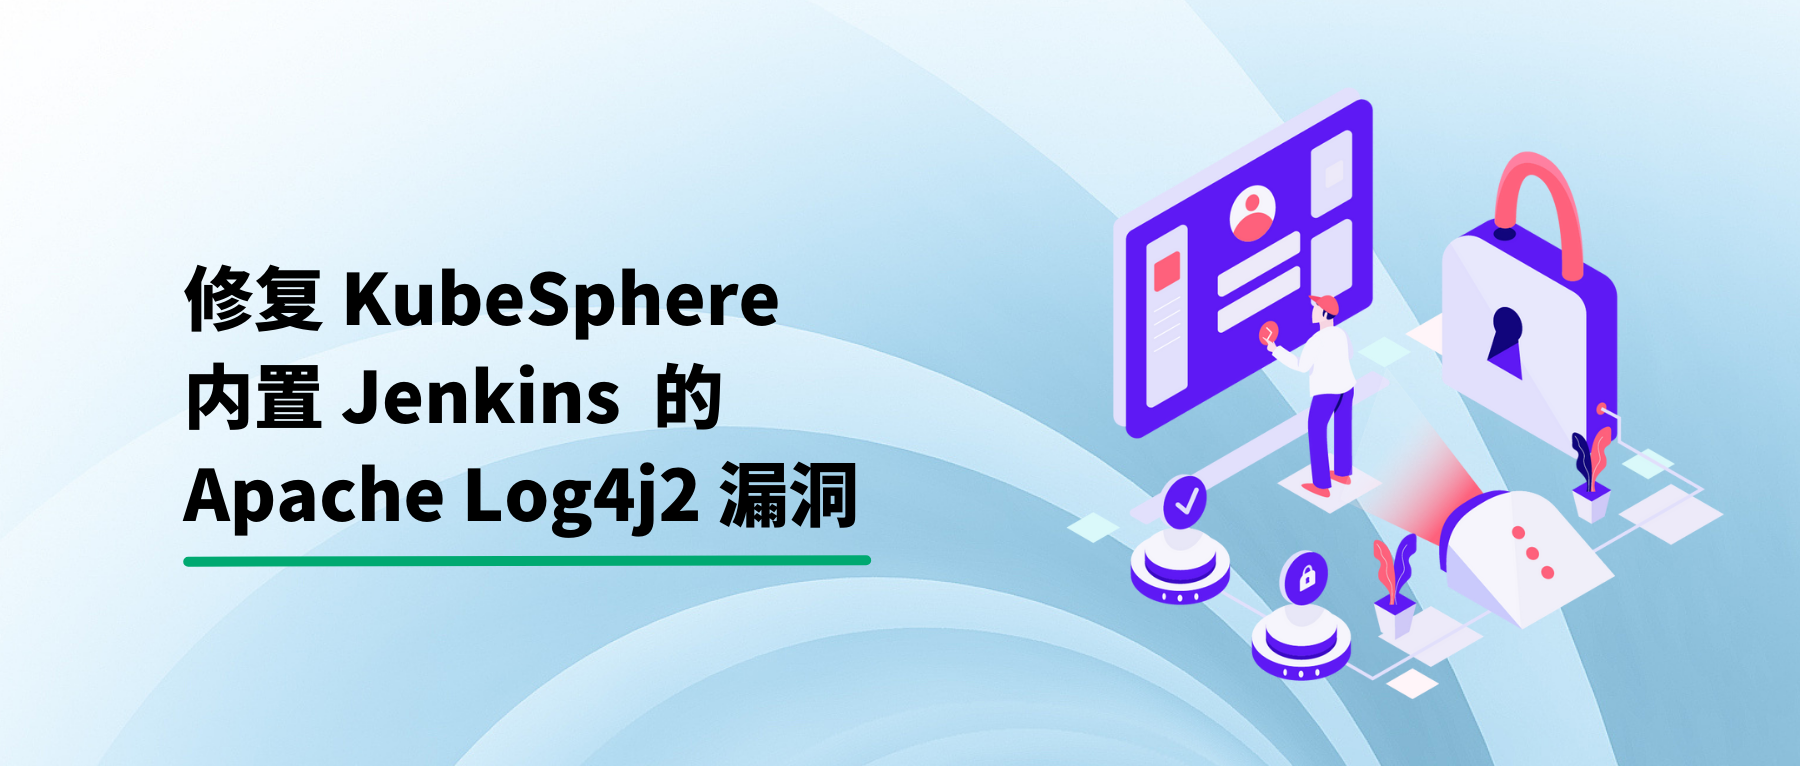 修复 KubeSphere 内置 Jenkins 的 Apache Log4j2 漏洞